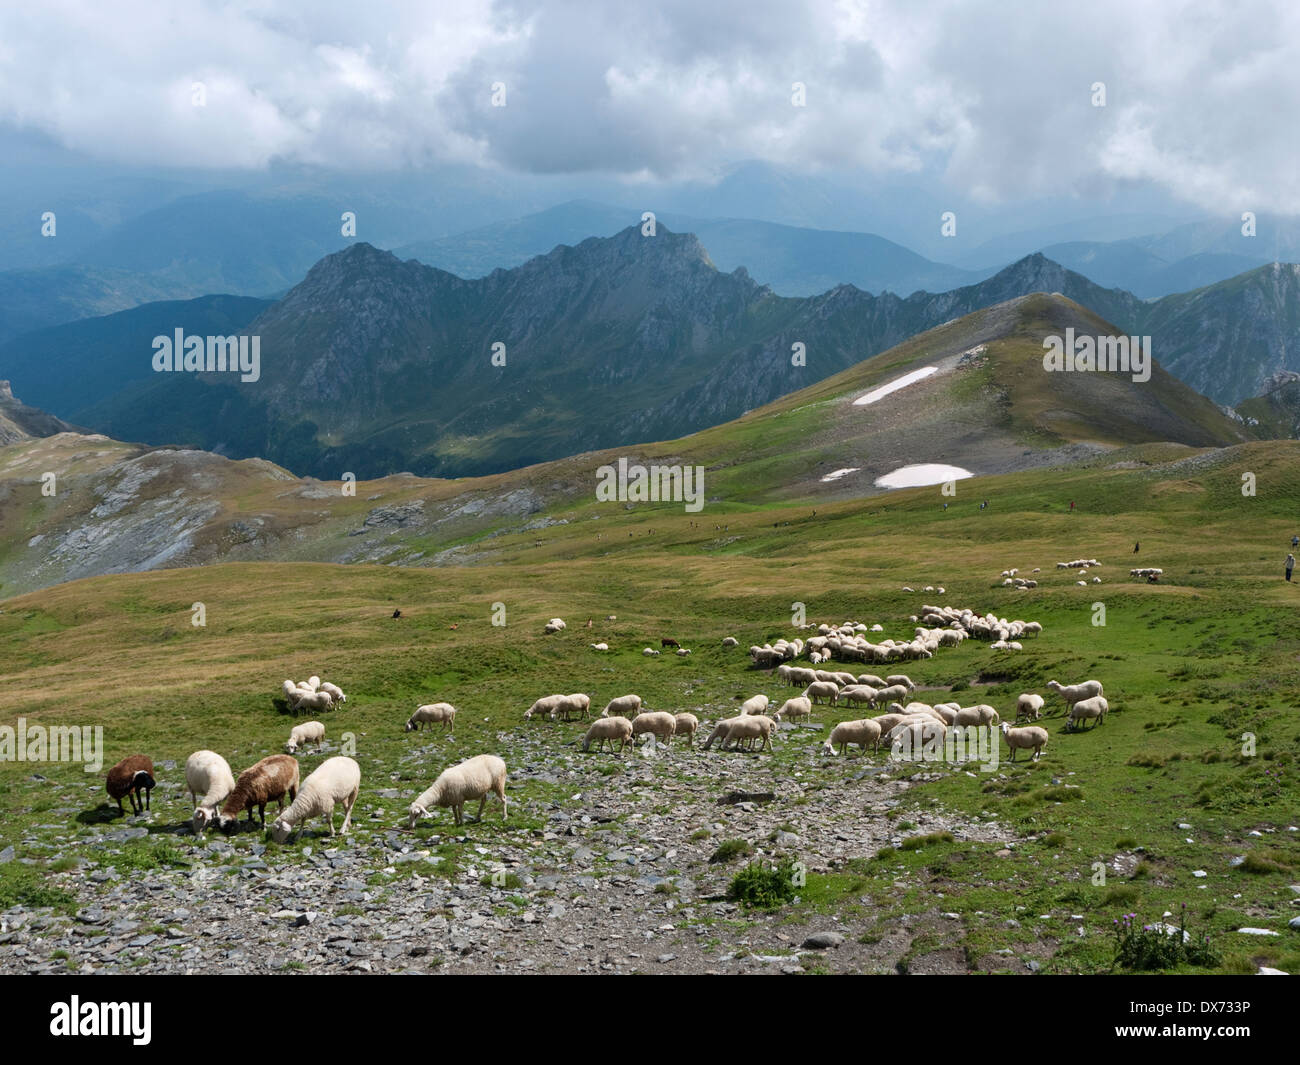 Moutons paissent sur les pentes du sommet de Golem Korab, le plus haut sommet de la Macédoine et l'Albanie, tandis que les randonneurs monter vers le haut. Banque D'Images